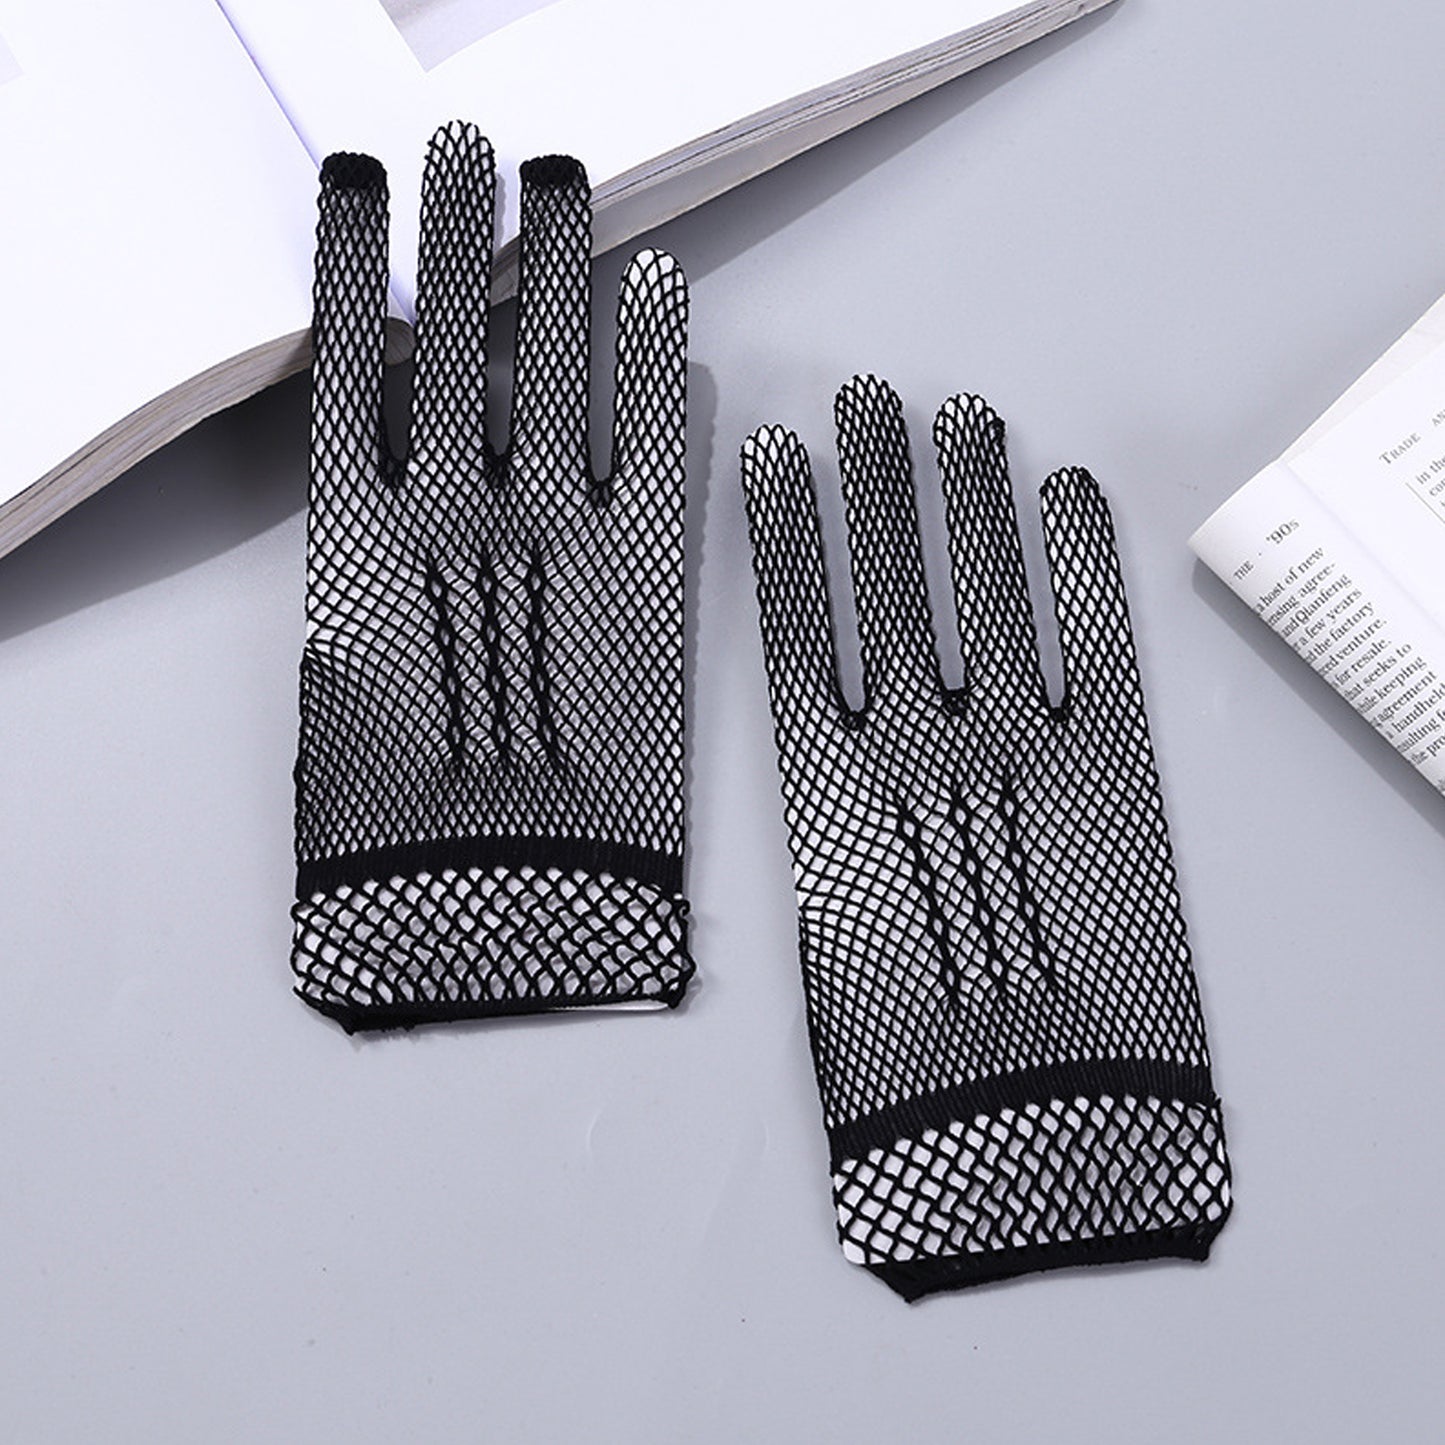 Fishnet Mesh Wrist Gloves